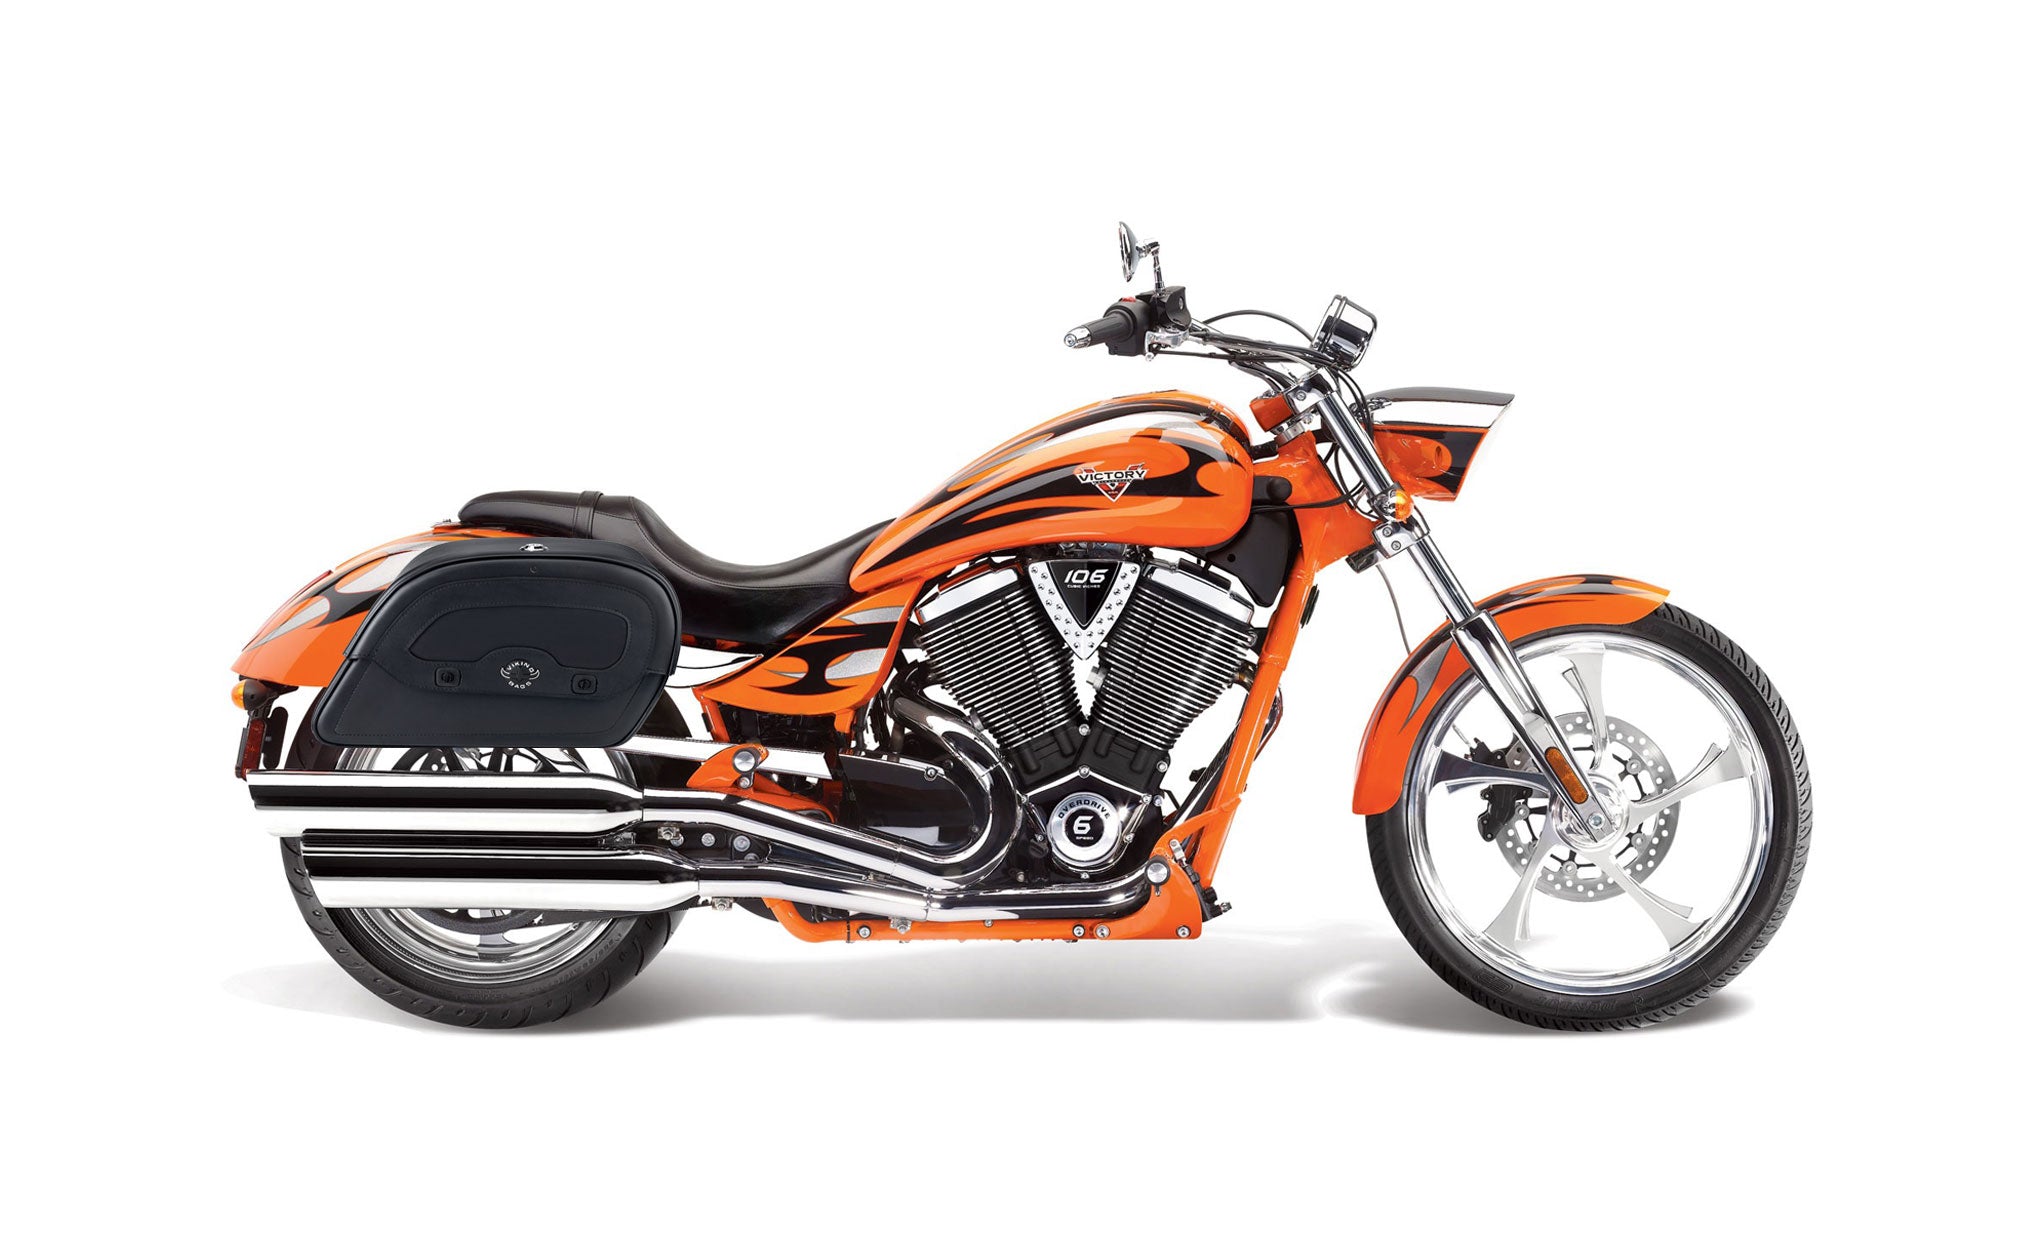 Viking Warrior Medium Victory Jackpot Leather Motorcycle Saddlebags on Bike Photo @expand